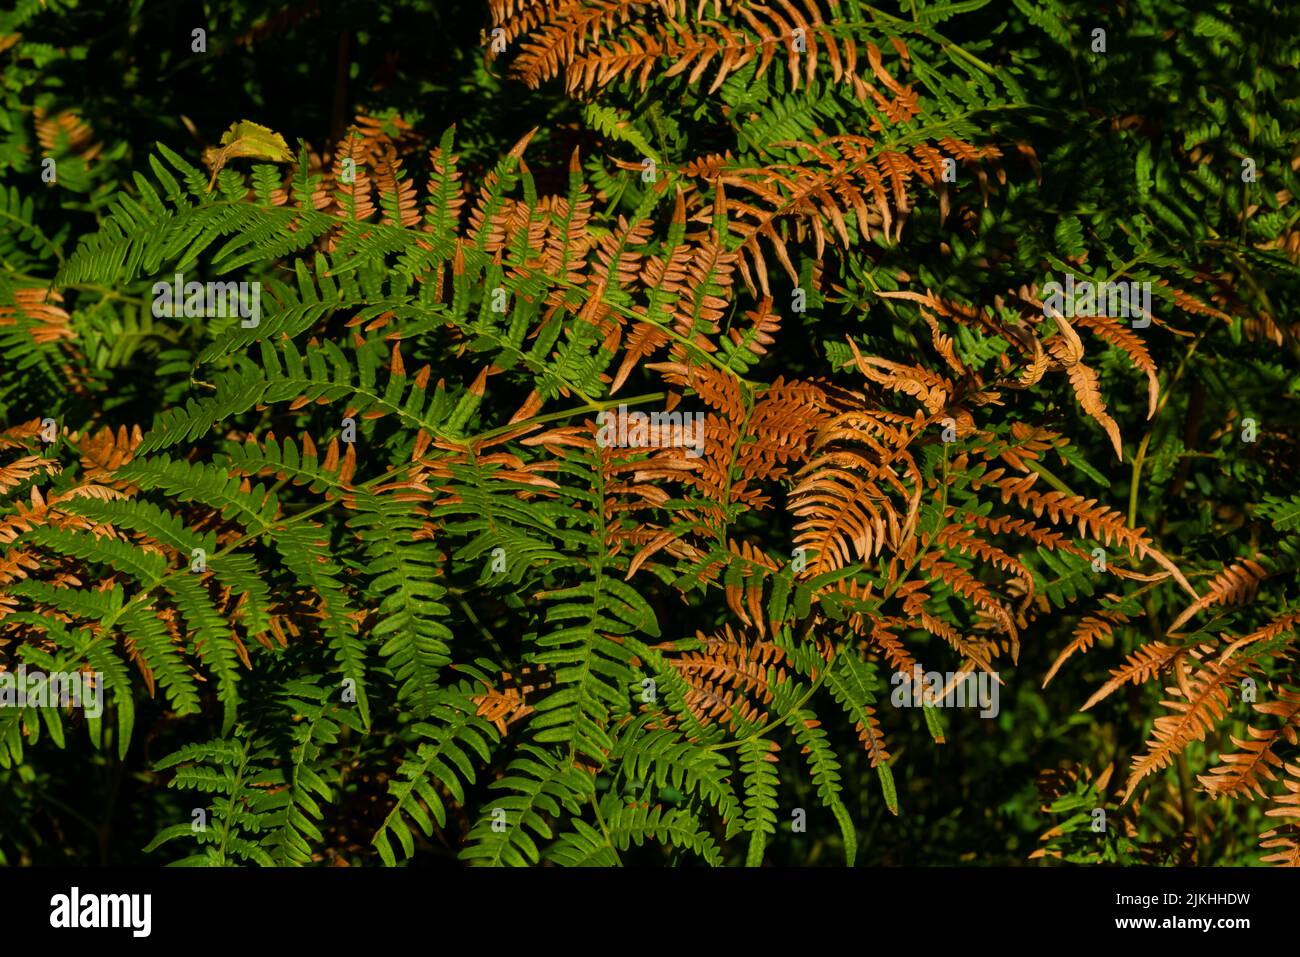 Fougère verte en été dans la forêt, les feuilles brunes décolorées pendant la période de sécheresse extrême due au changement climatique Banque D'Images